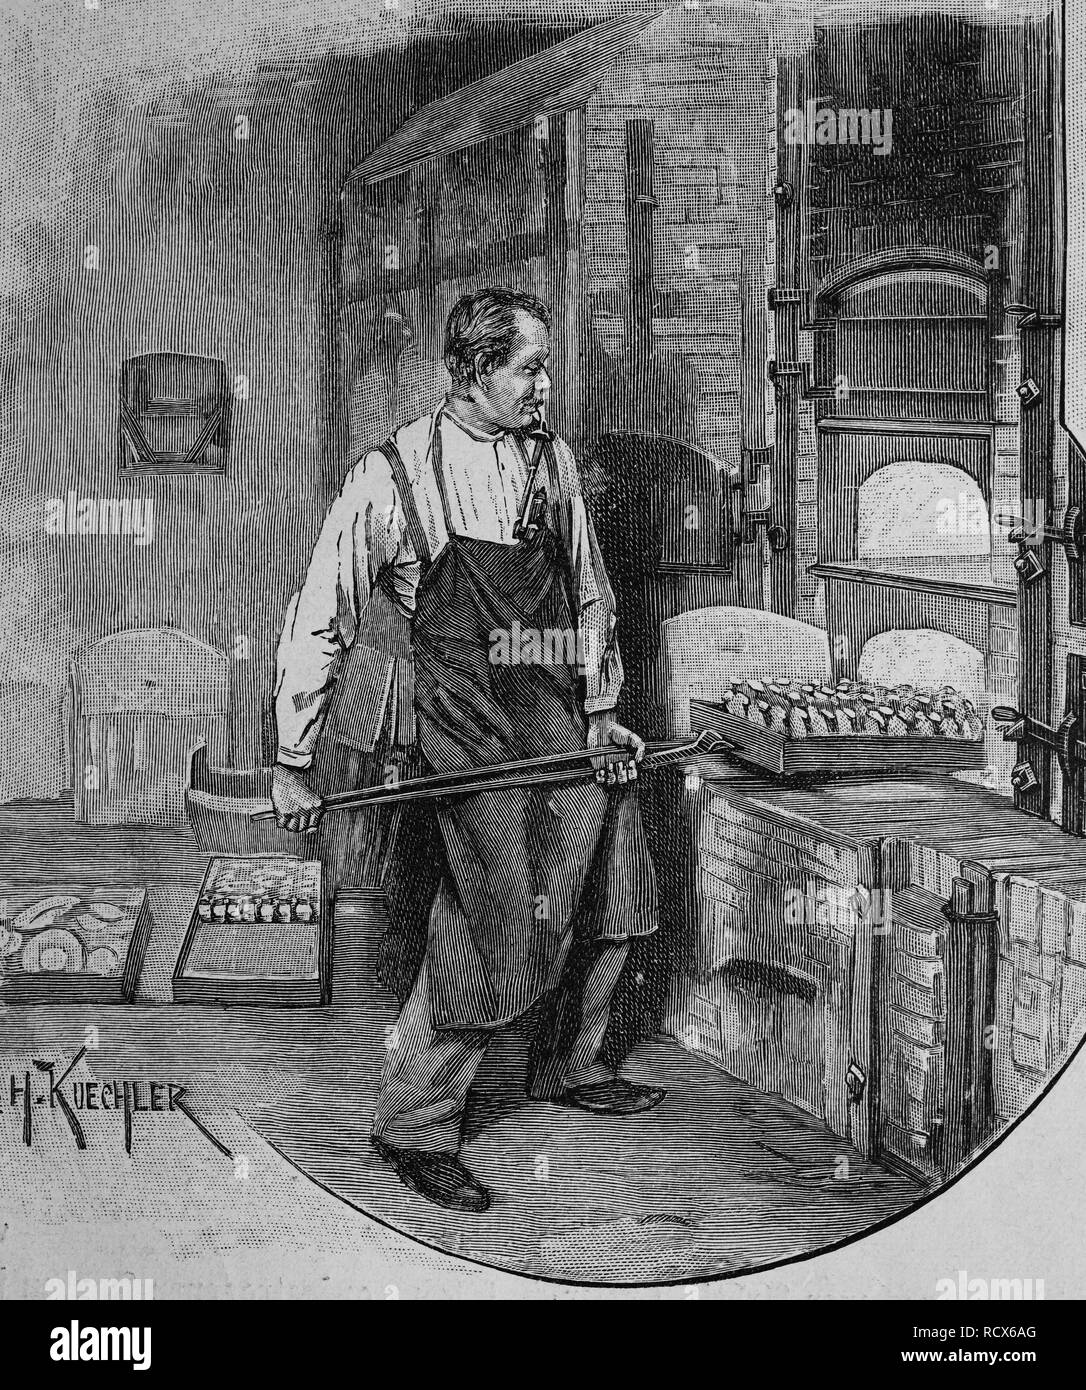 Schmelzer, die Herstellung von Porzellan, Holzschnitt, ca. 1880 Stockfoto